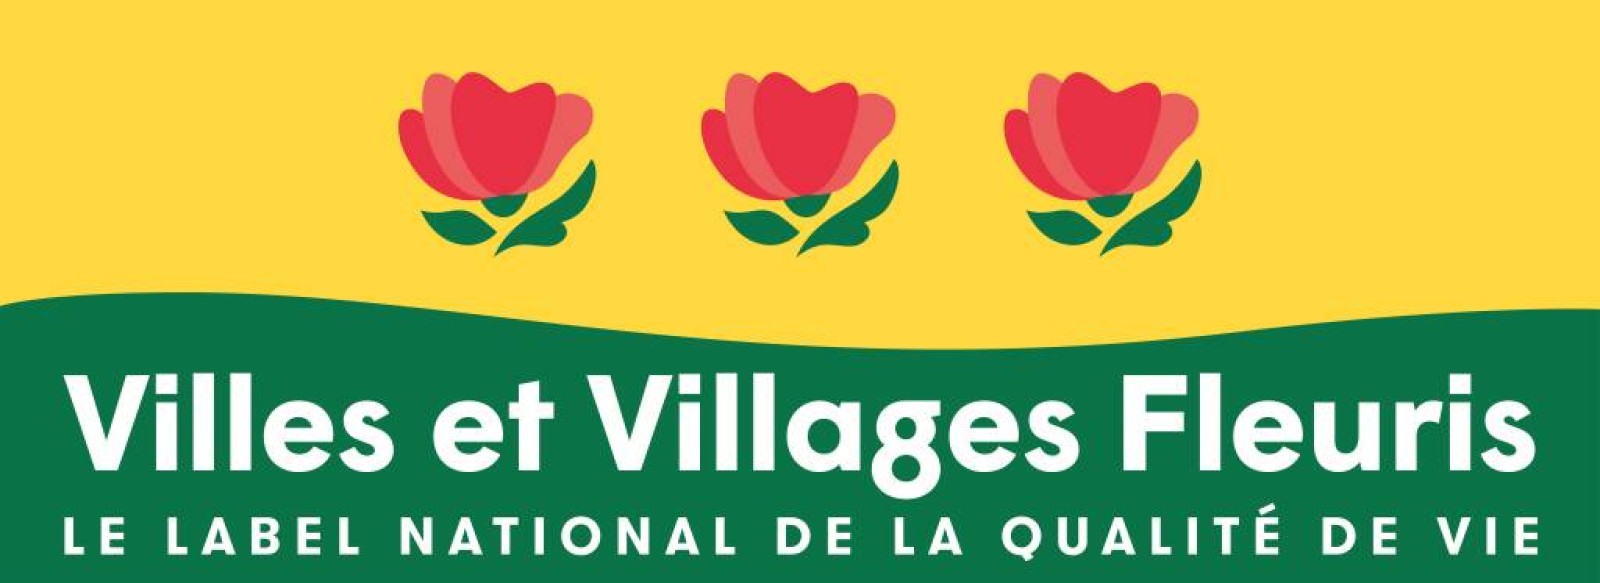 Commune fleurie de Montval sur Loir